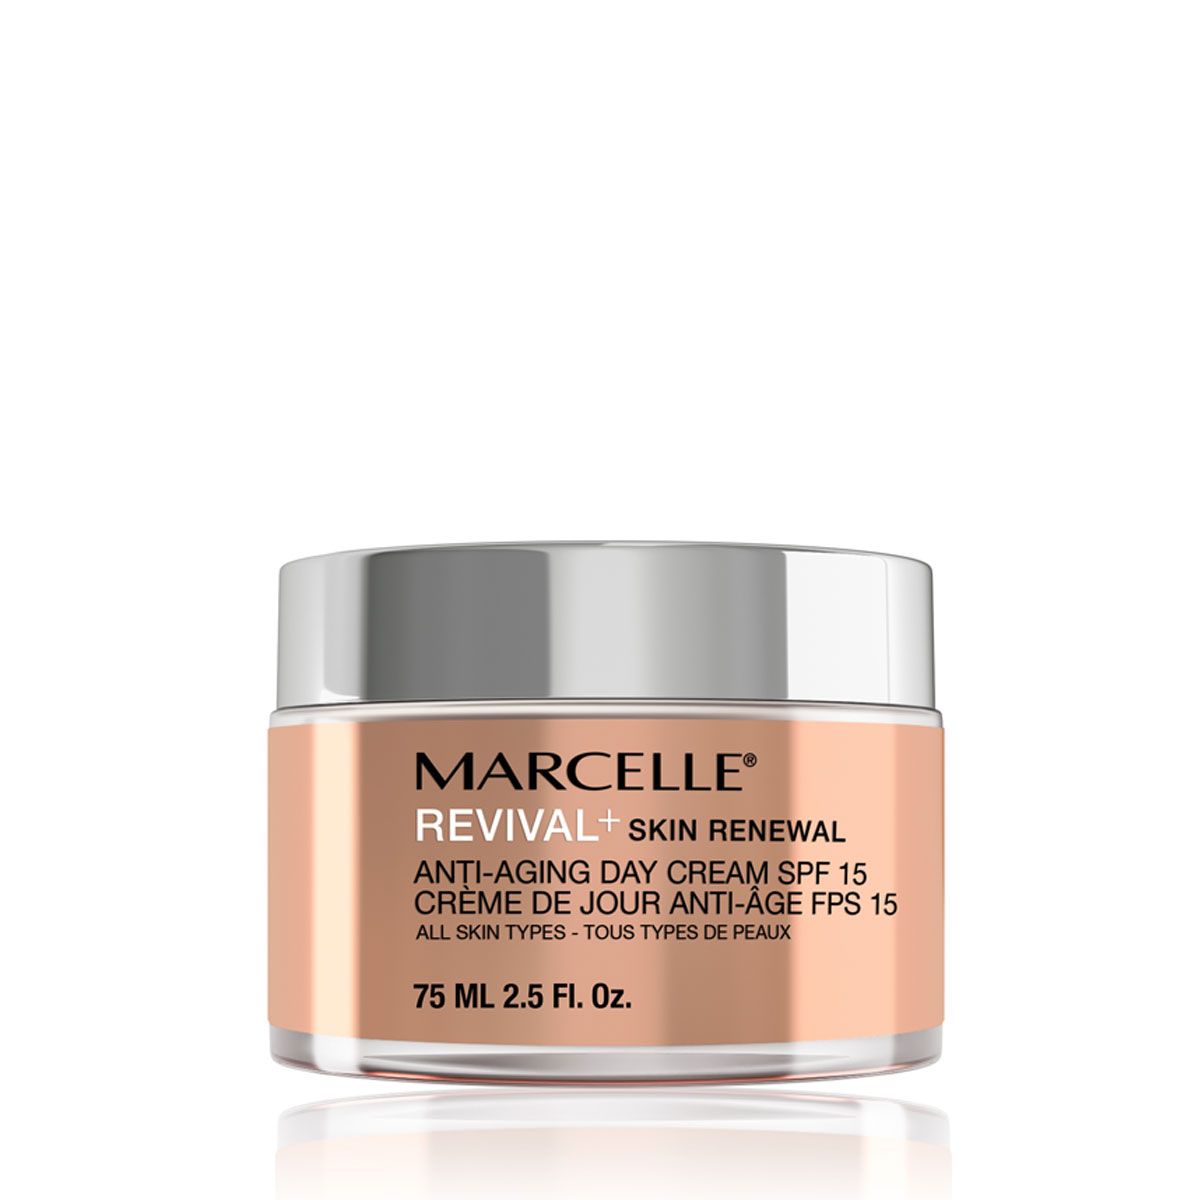 【限定優惠】Marcelle Revival+ Skin Renewal Anti-Aging Day Cream SPF 15 - 75 mL